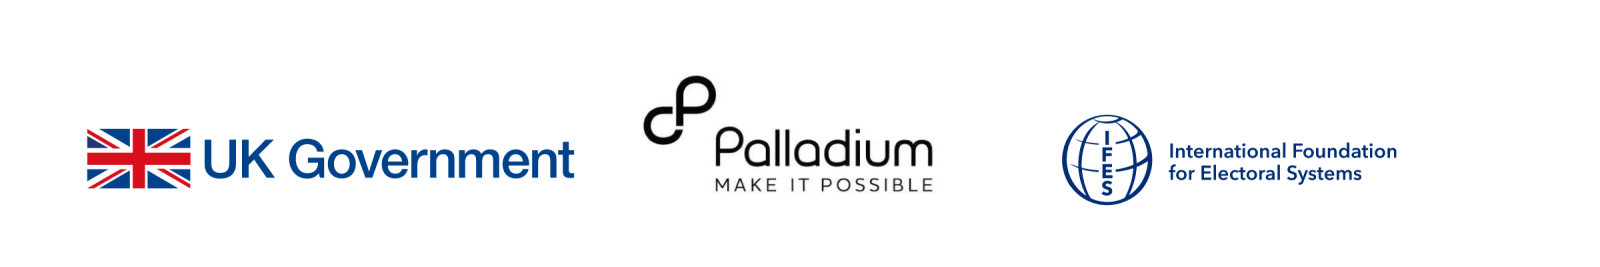 UK Government Logo, Palladium Logo, IFES Logo